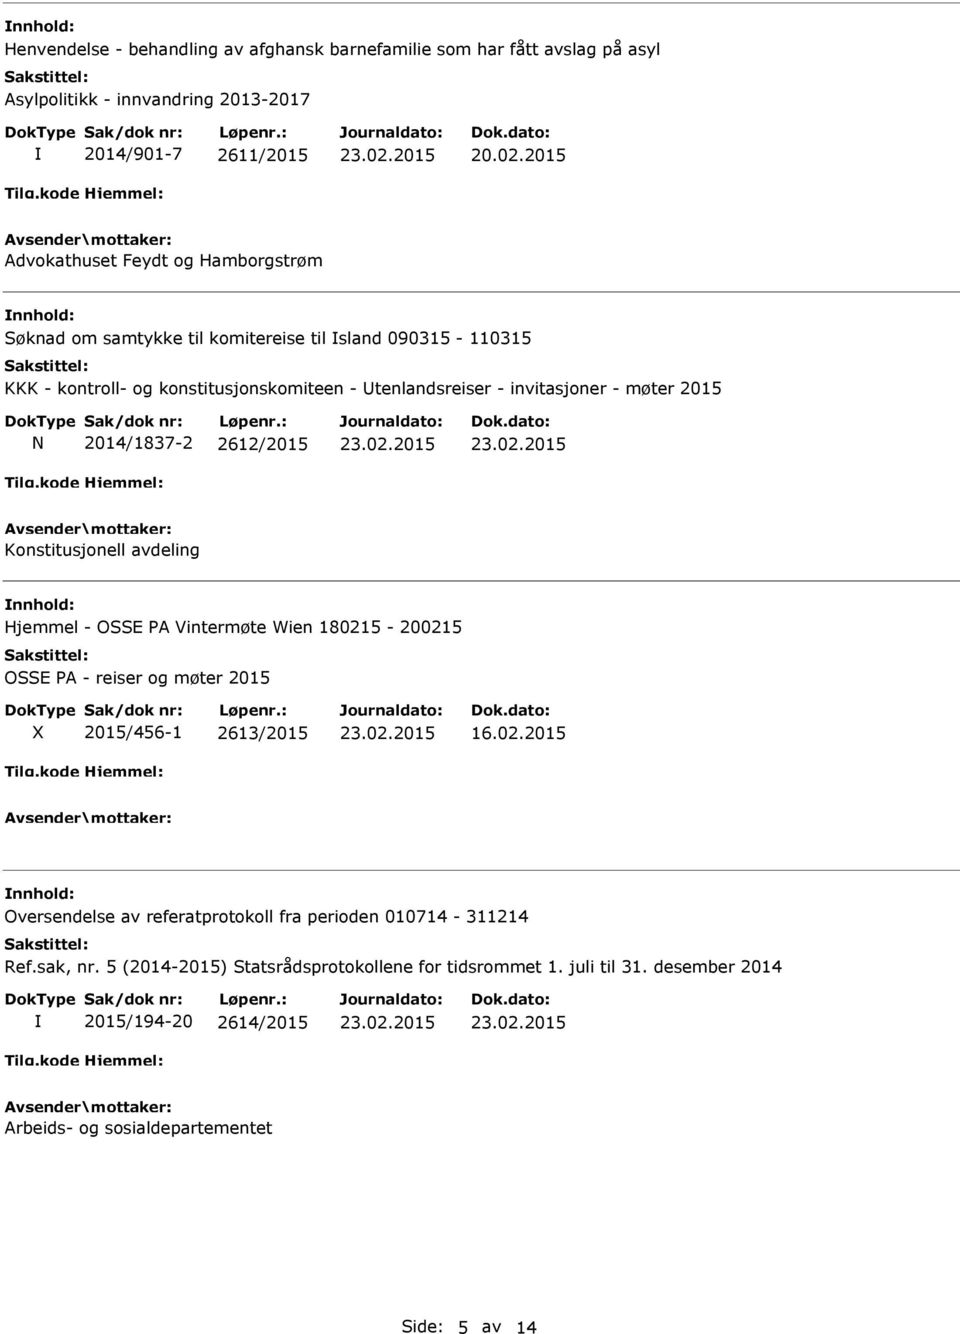 Konstitusjonell avdeling Hjemmel - OSSE PA Vintermøte Wien 180215-200215 OSSE PA - reiser og møter 2015 2015/456-1 2613/2015 16.02.2015 Oversendelse av referatprotokoll fra perioden 010714-311214 Ref.